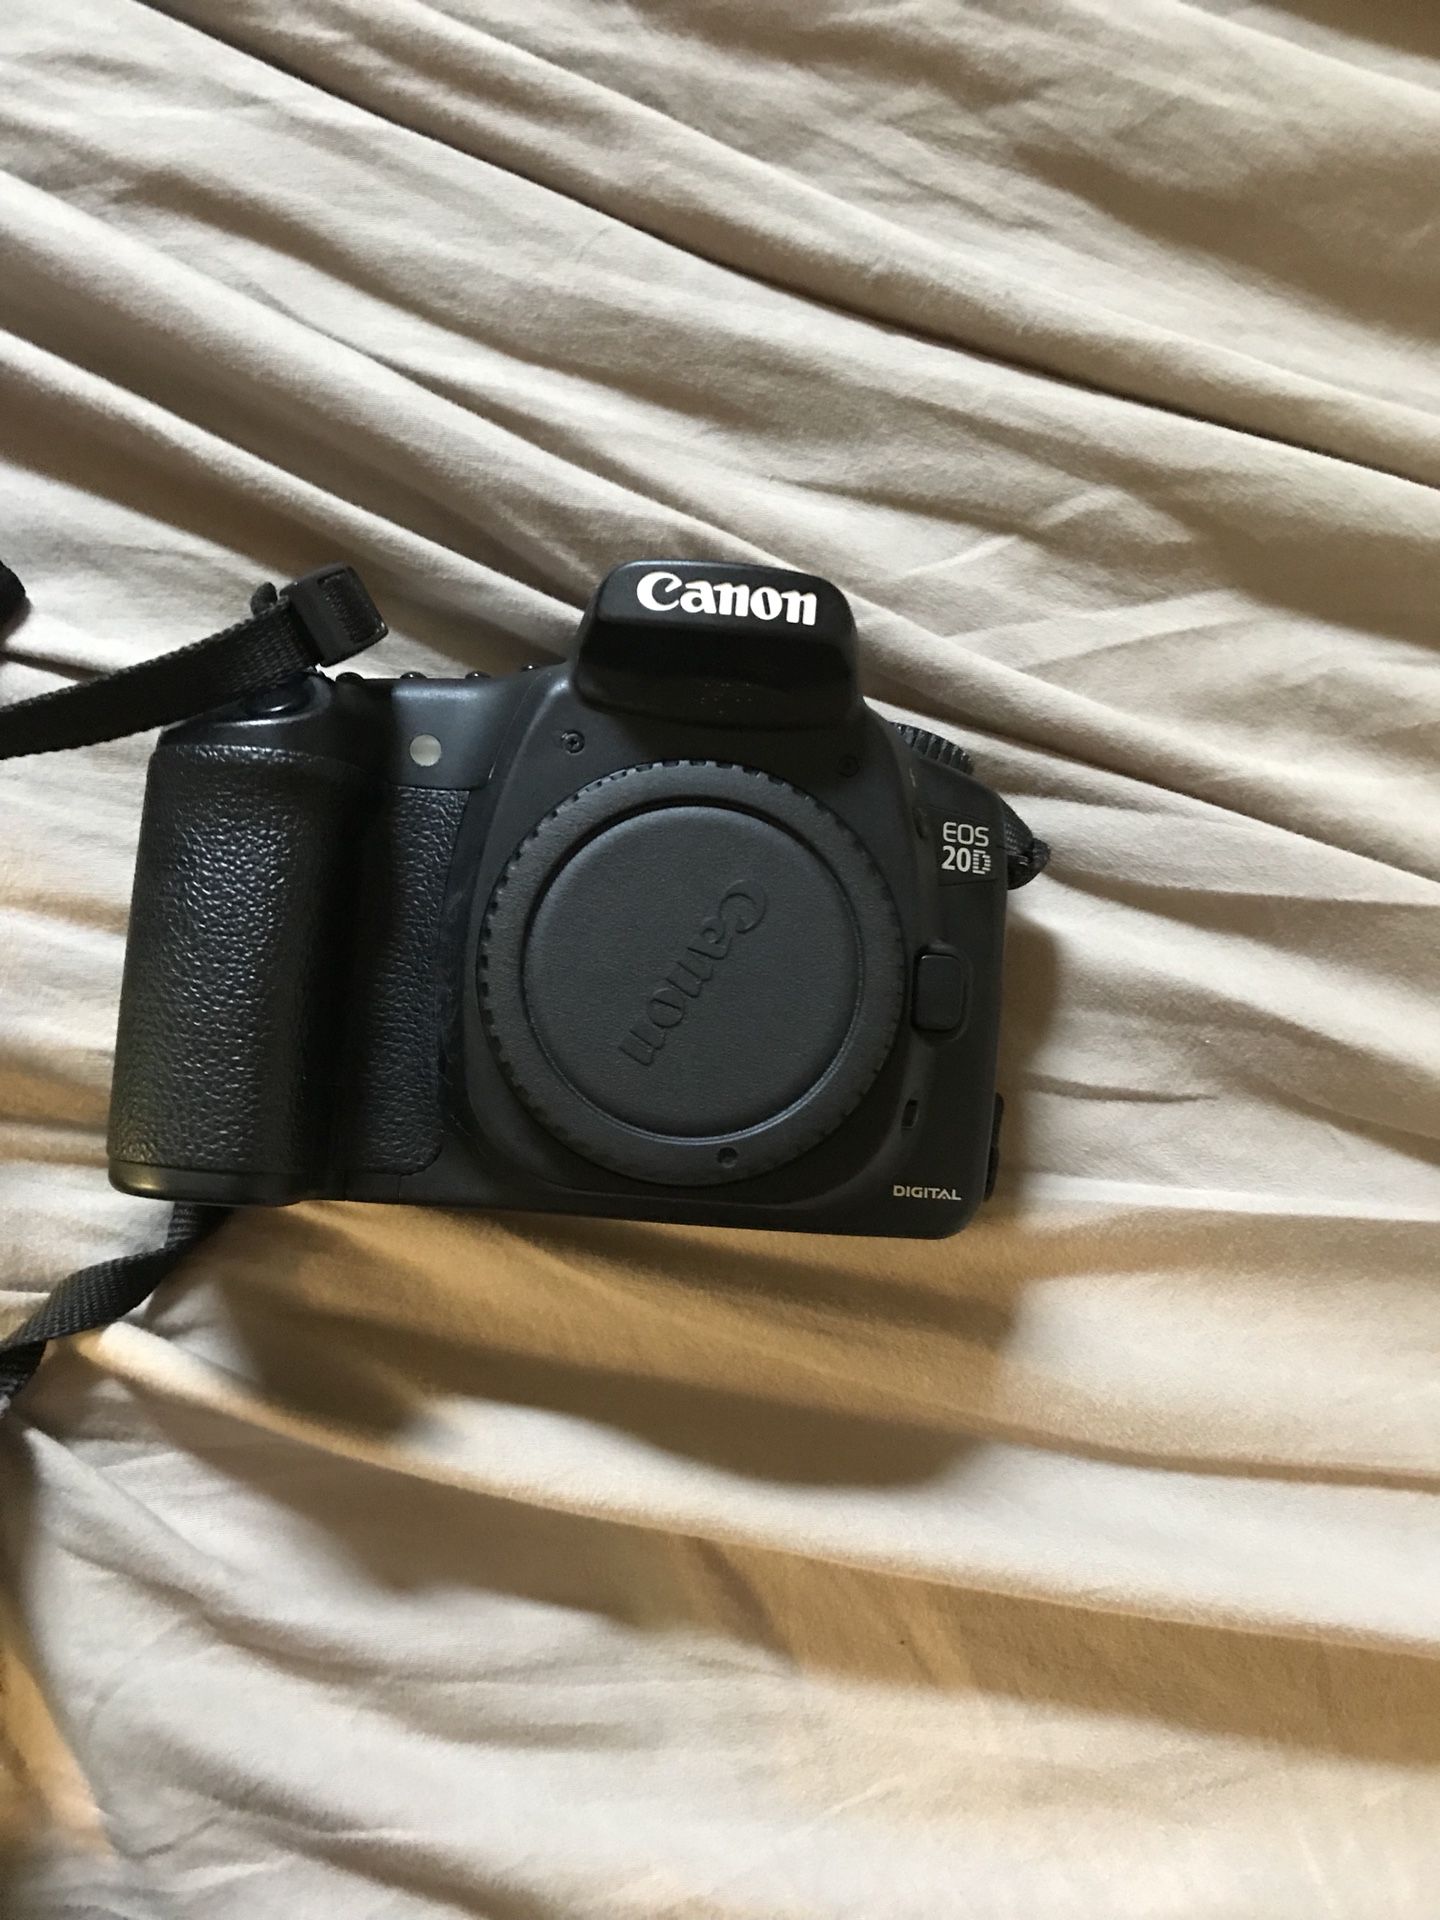 Canon Eos 20d with Lense